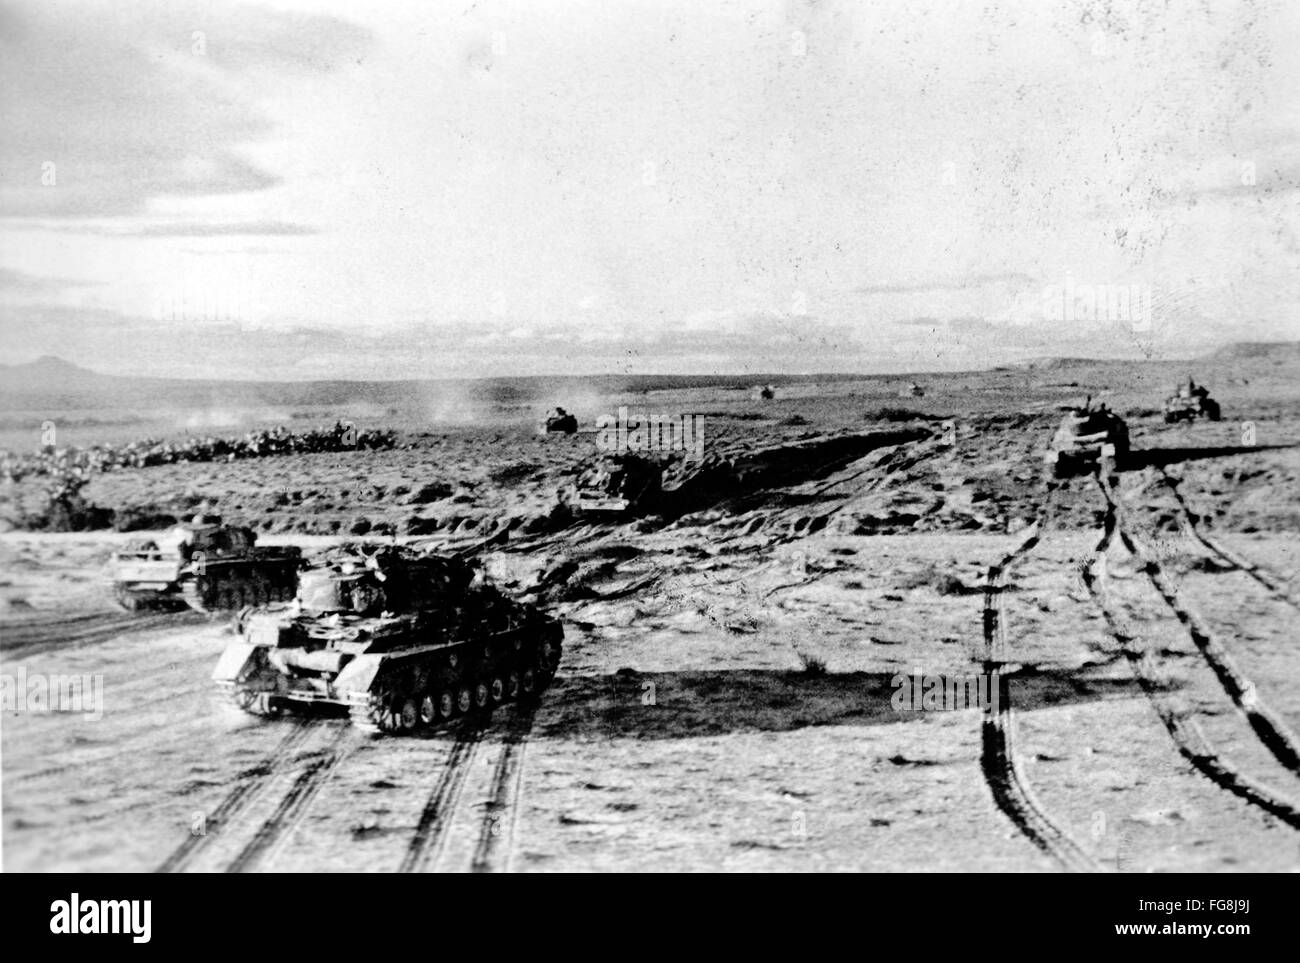 Le tableau de la propagande nazie montre des chars de la Wehrmacht allemande dans le désert en Tunisie. La photo a été prise en février 1943. Fotoarchiv für Zeitgeschichtee - PAS DE SERVICE DE VIREMENT - Banque D'Images